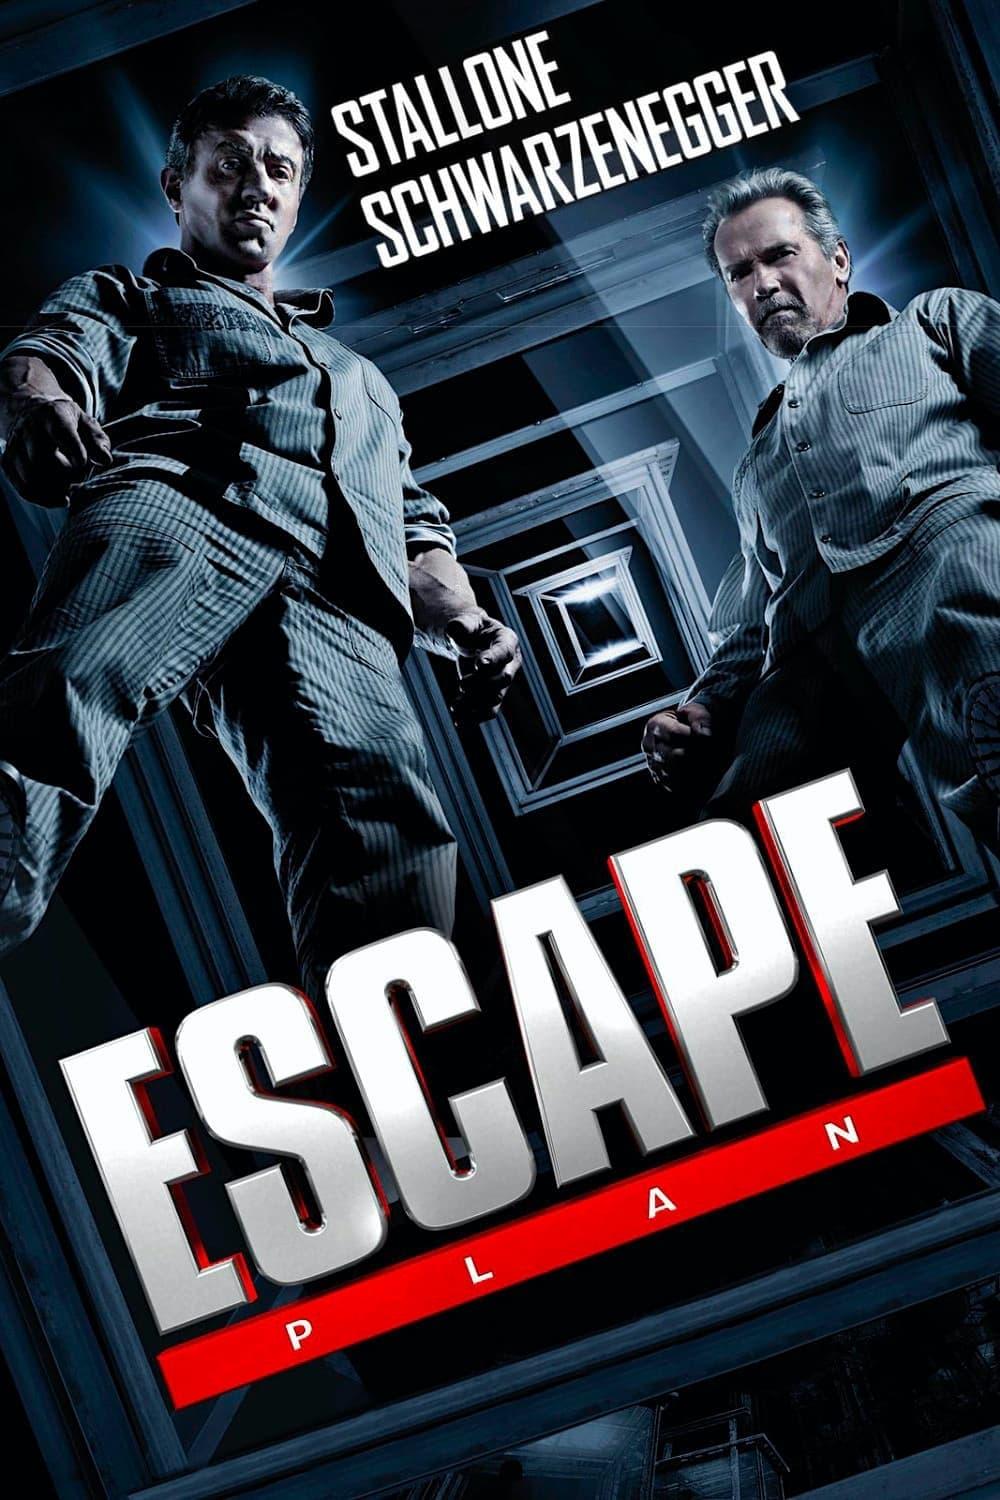 Escape Plan poster